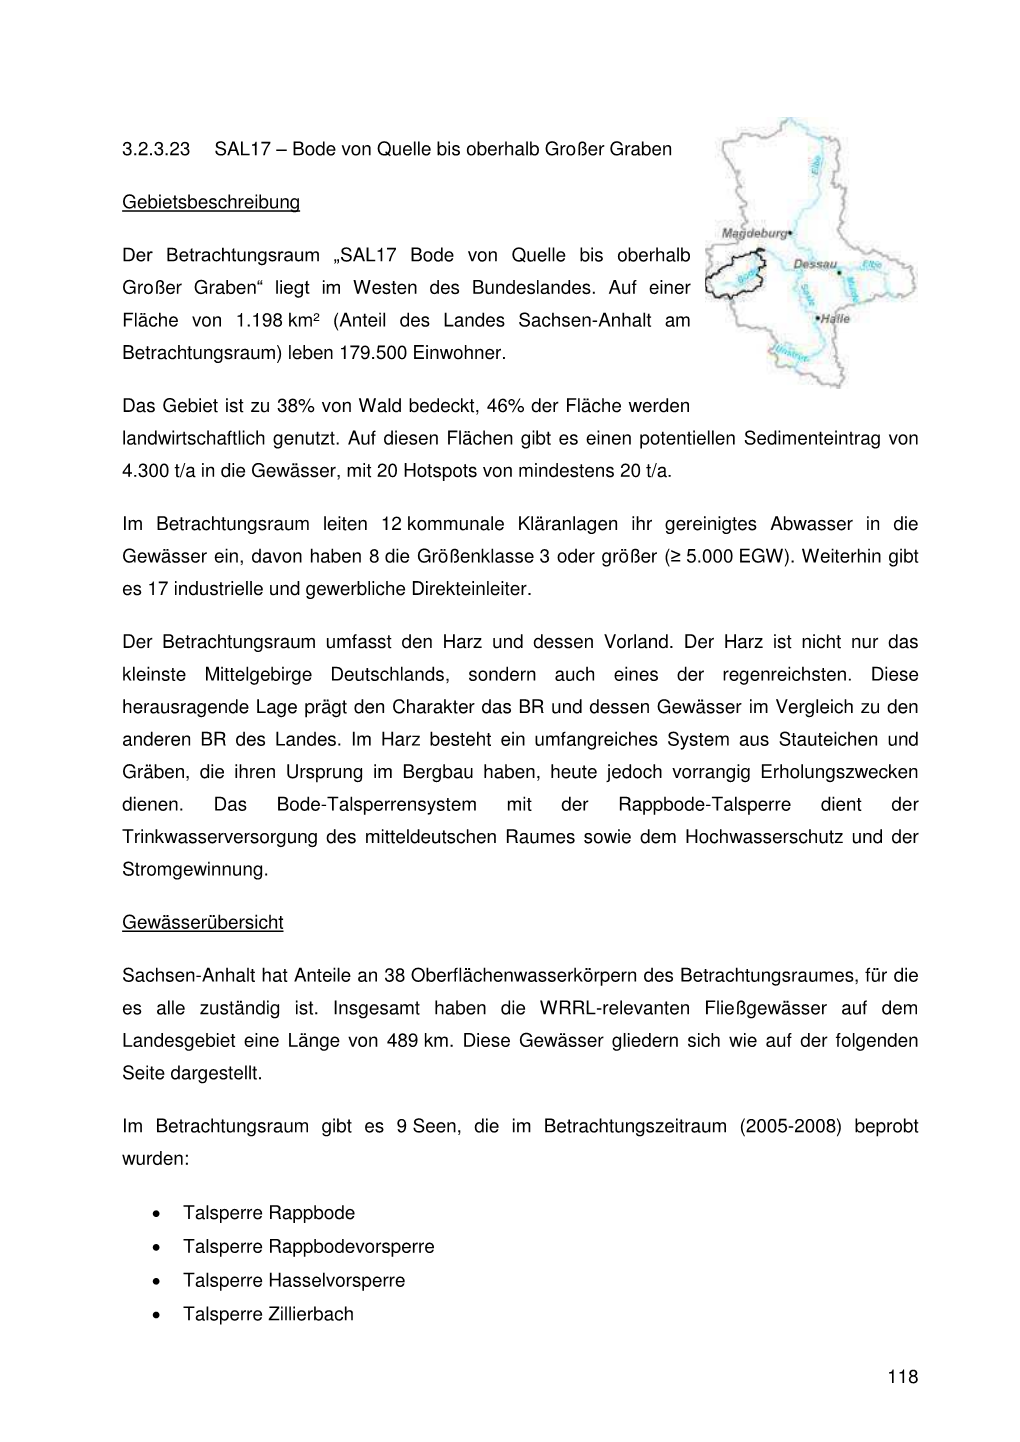 SAL17 Bode Von Quelle Bis Oberhalb Großer Graben“ Liegt Im Westen Des Bundeslandes